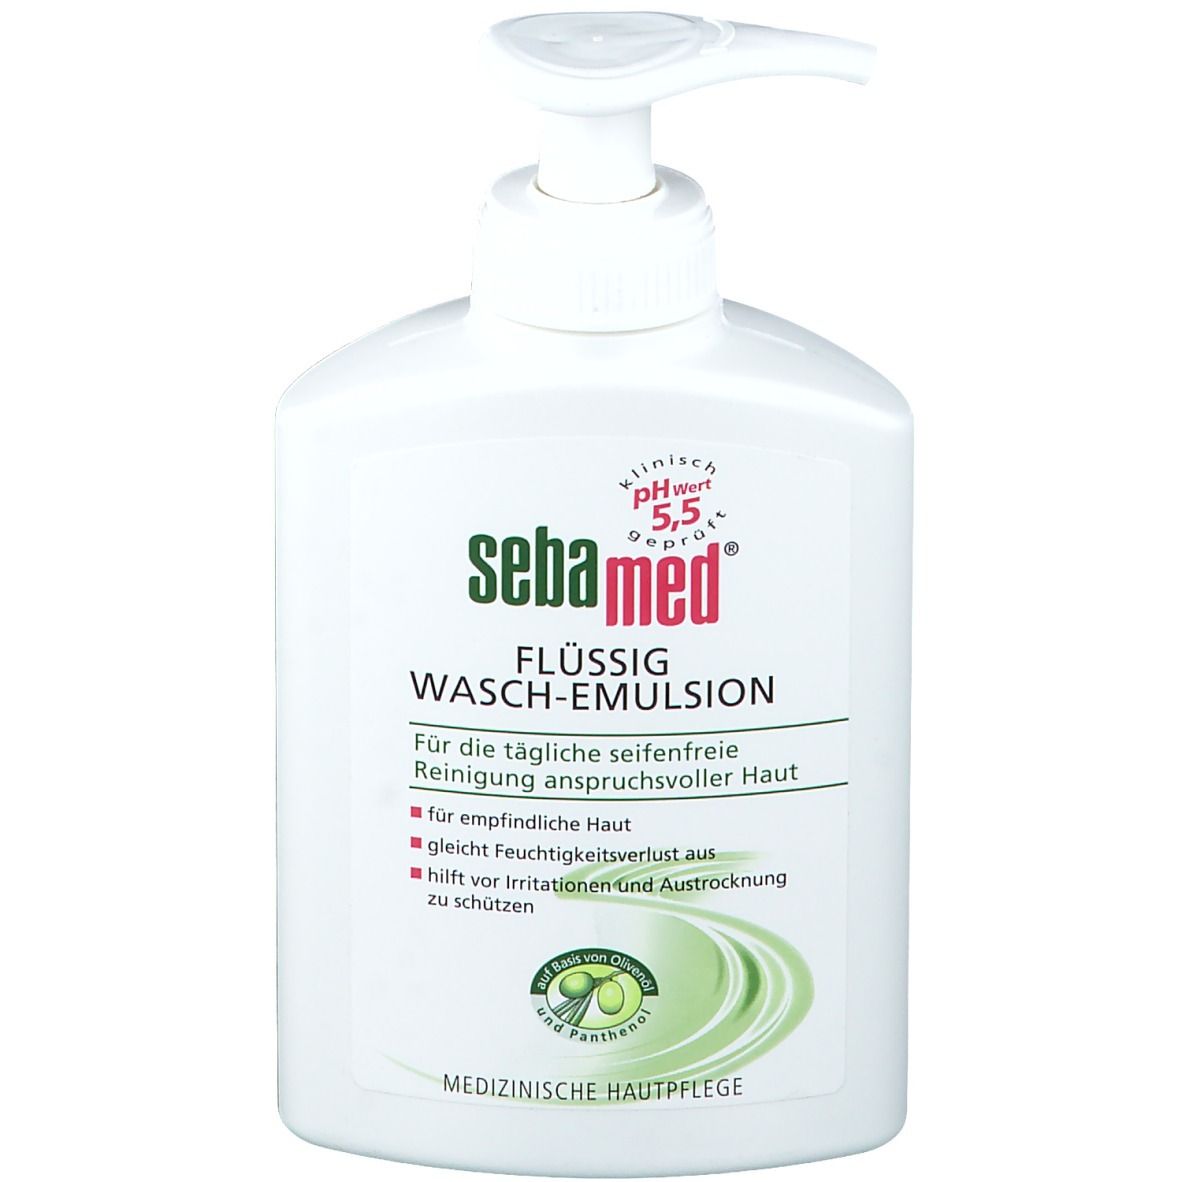 Image of sebamed® flüssig Wasch-Emulsion Olive mit Spender